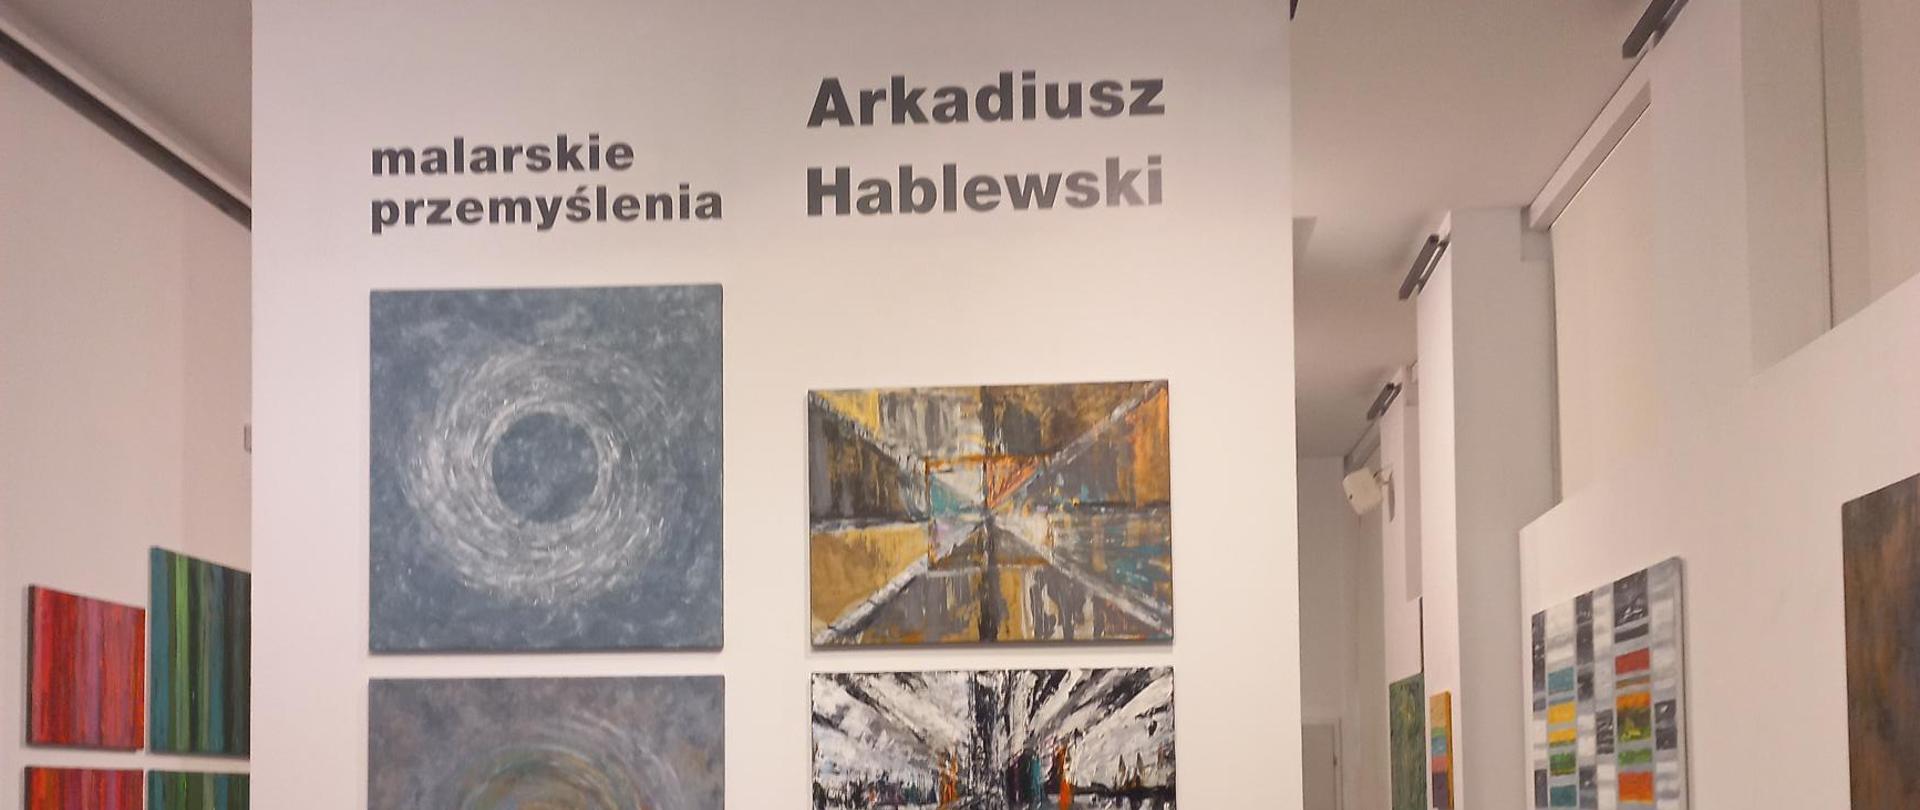 Plakat promujący wystawę “Malarskie przemyślenia” Arkadiusza Hablewskiego